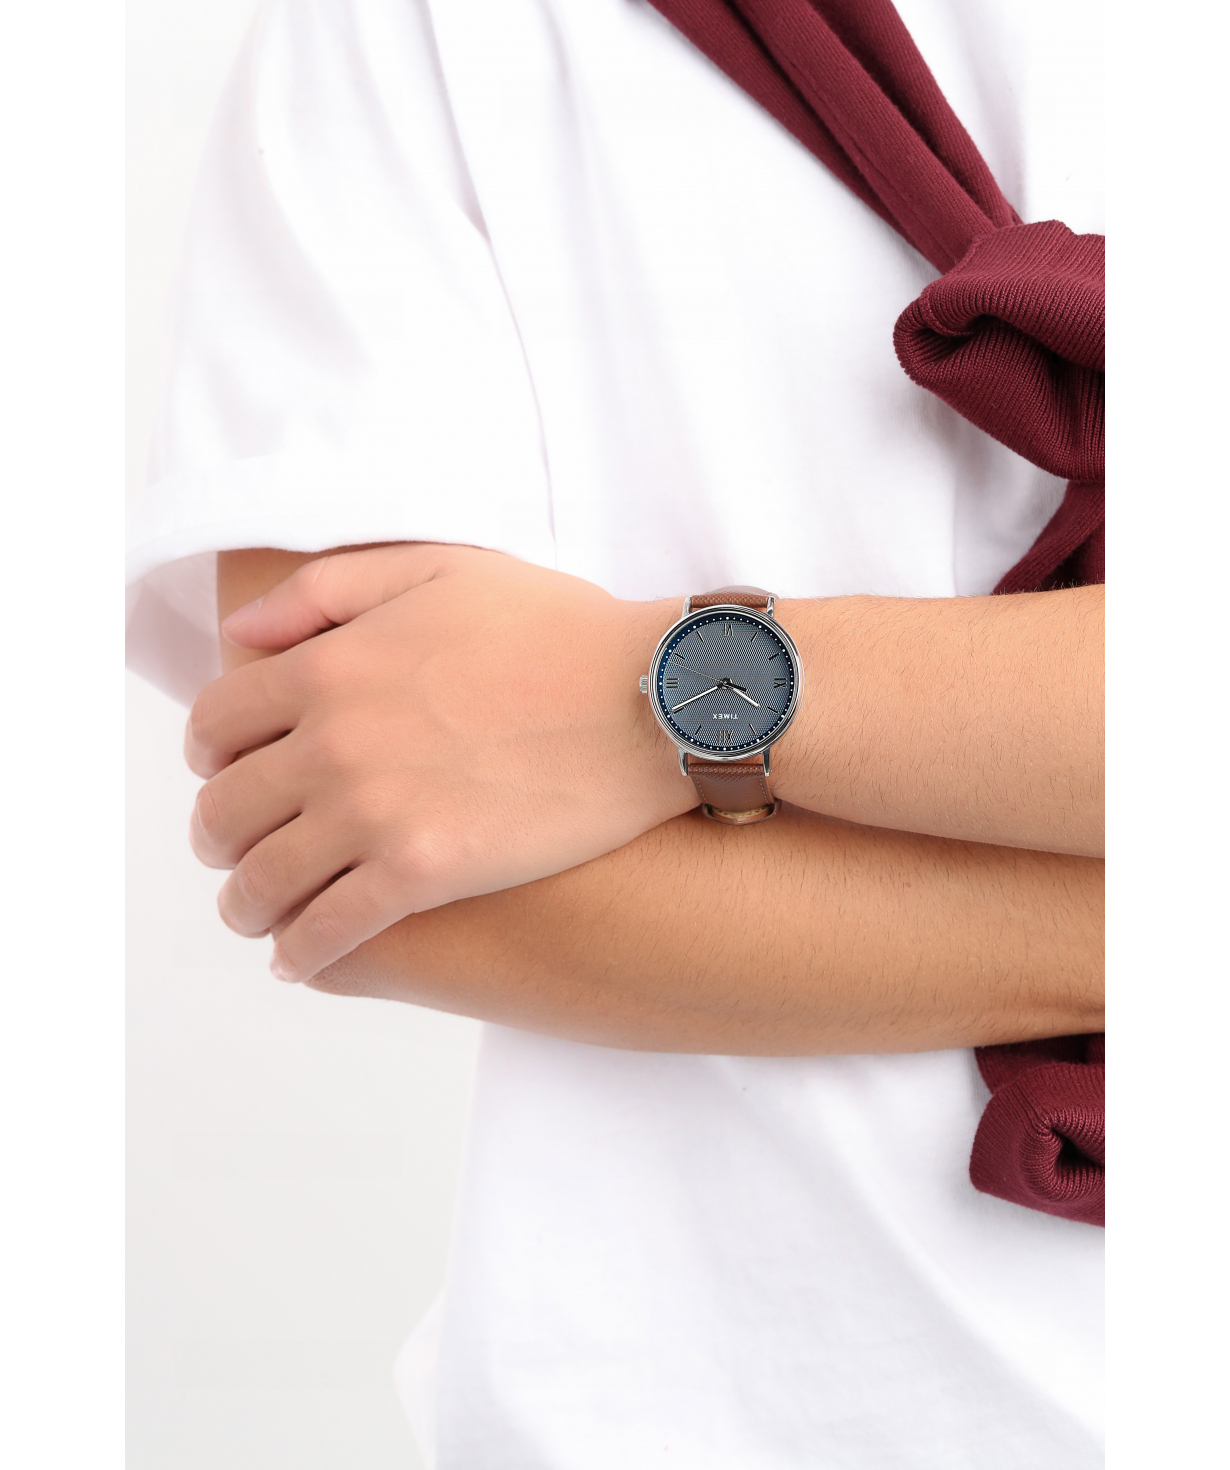 Wristwatch `Timex` TW2T34800